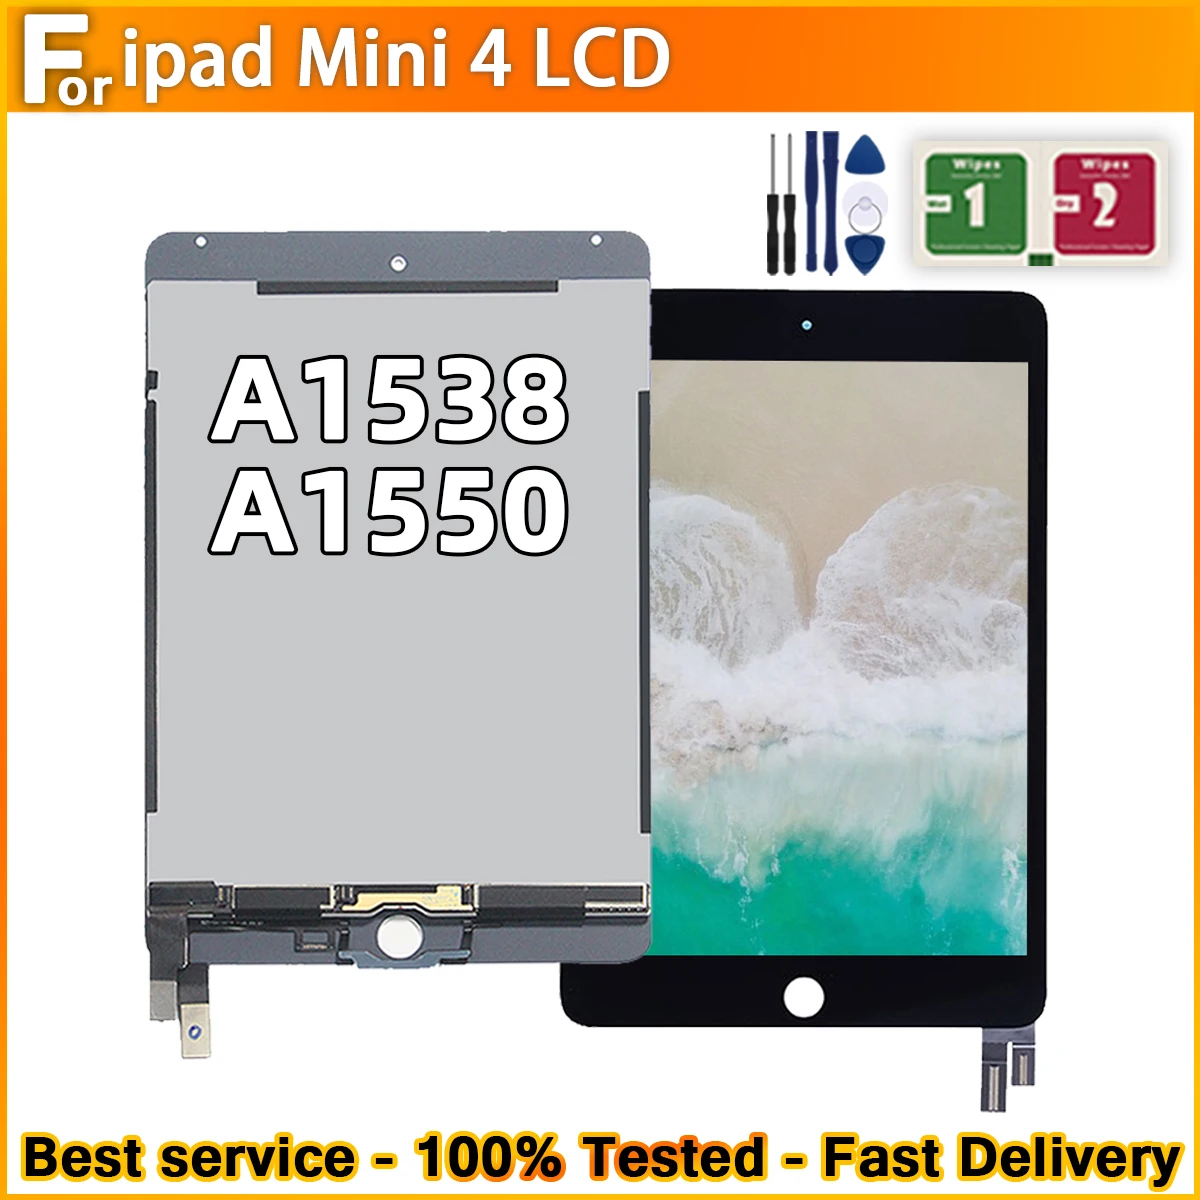 ECRAN LCD VITRE TACTILE IPAD MINI 4 BLANC A1538 A1550 + outils